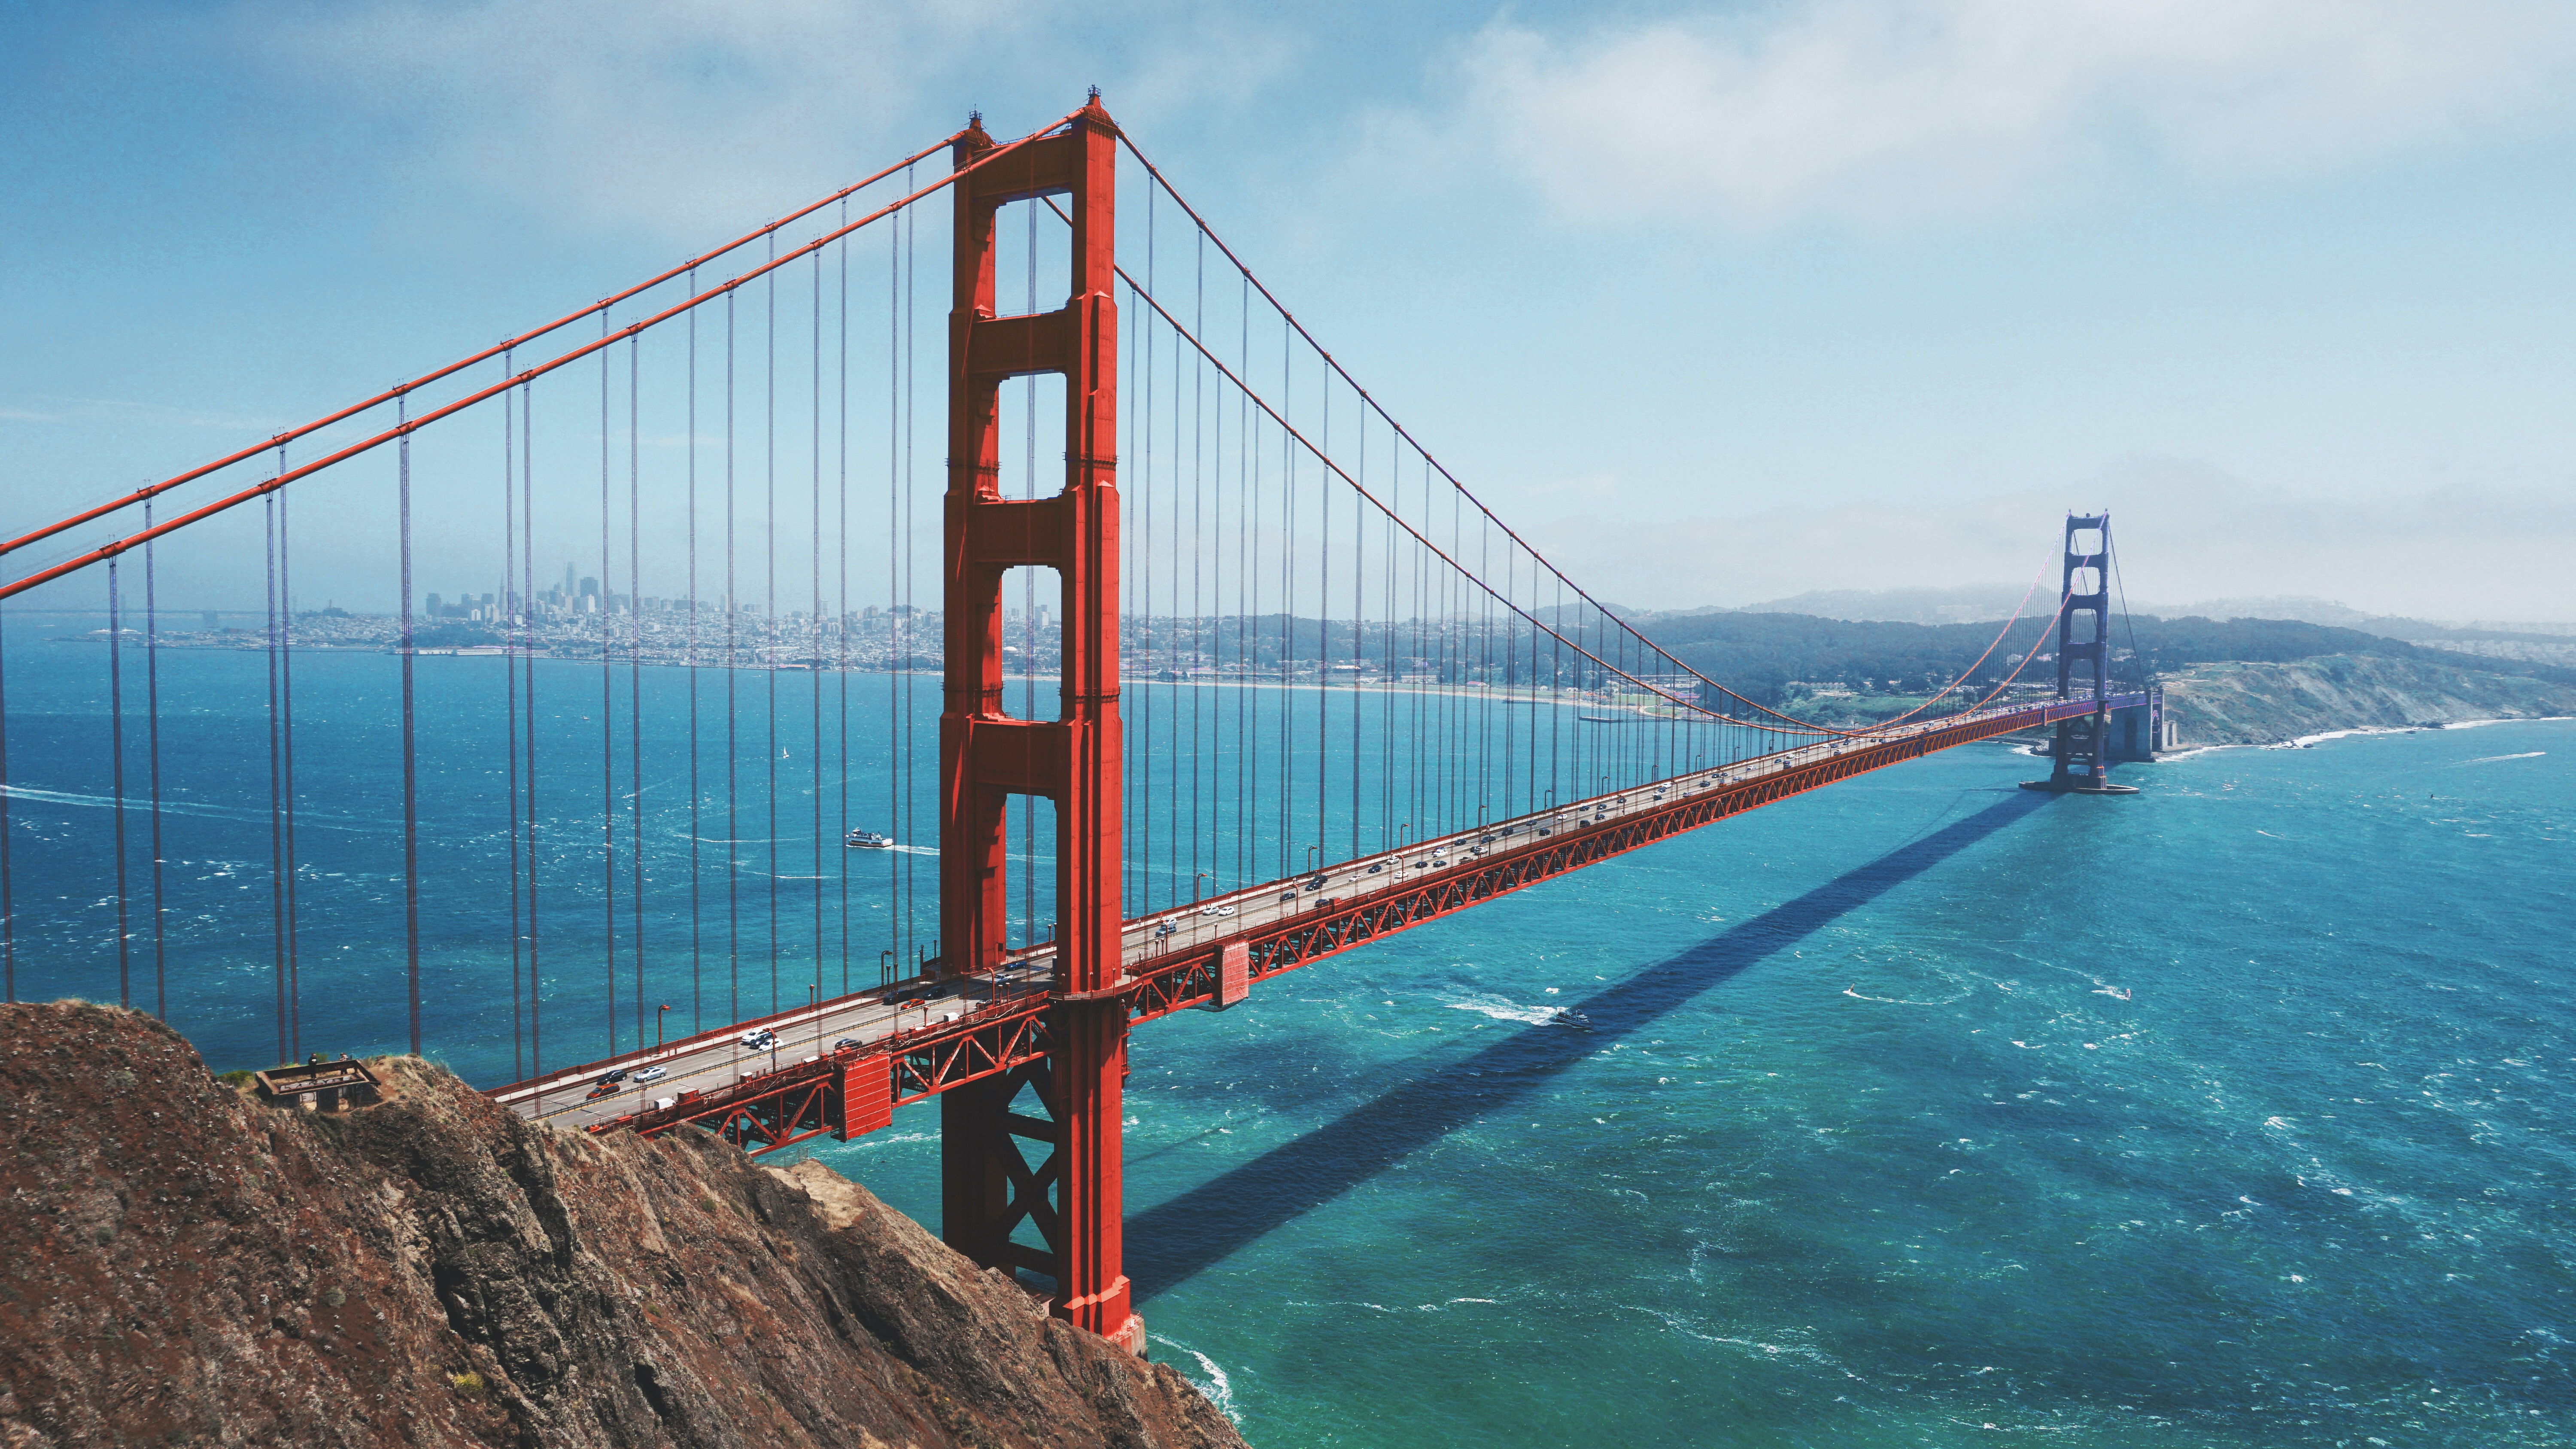 San Francico Golden Gate Bridge photo by Maarten Van Den Heuval